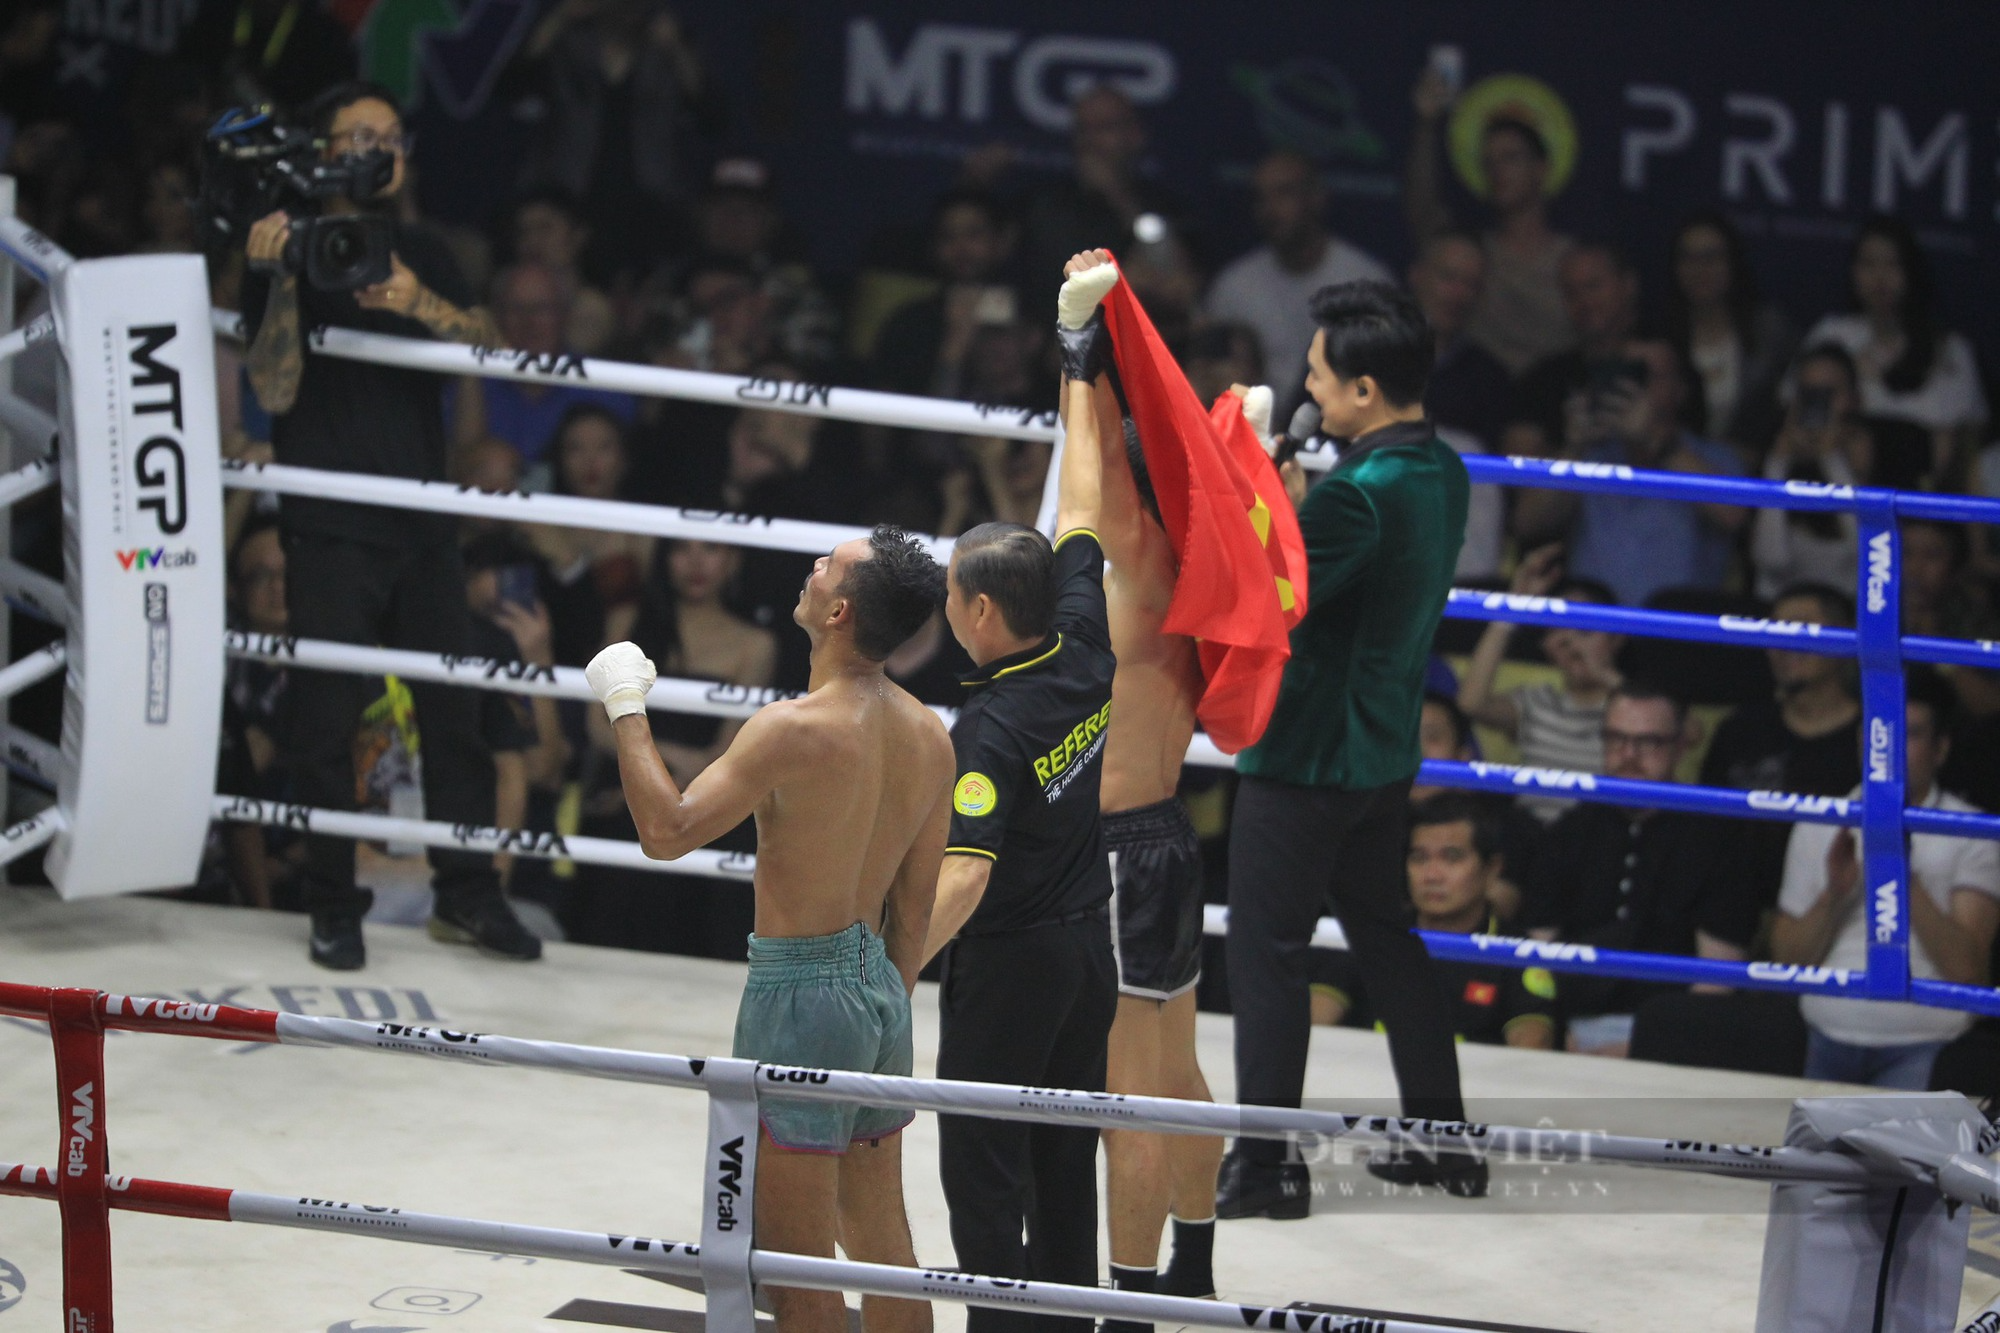 Thắng kịch tính võ sĩ Thái Lan, Nguyễn Trần Duy Nhất giành đai bạc MTGP - Ảnh 18.